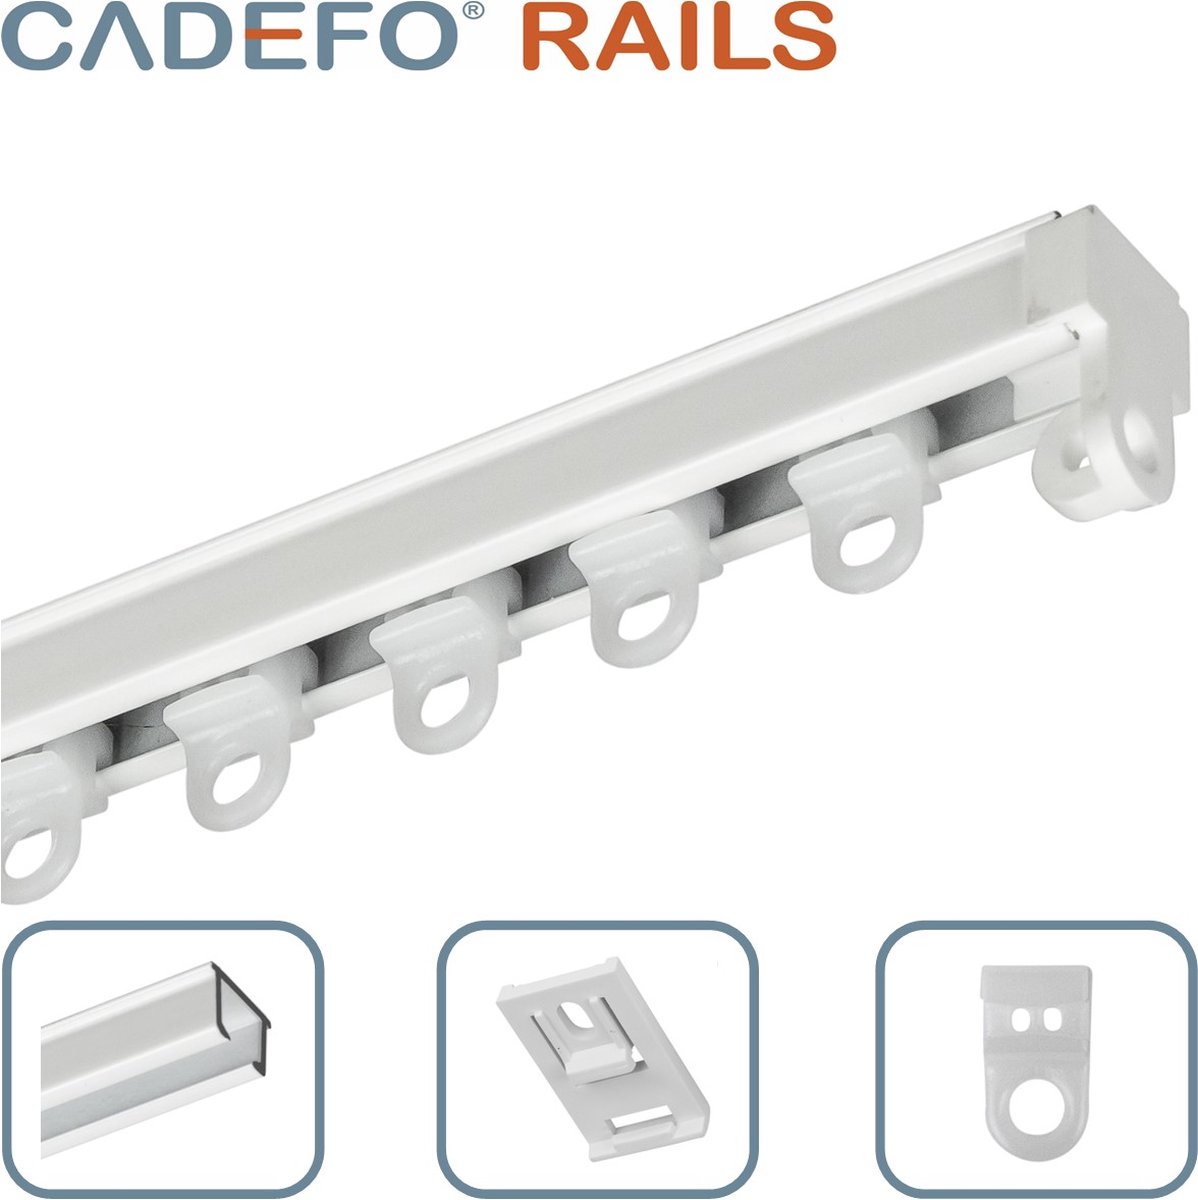 CADEFO RAILS (201 - 250 cm) Gordijnrails - Compleet op maat! - UIT 1 STUK - Leverbaar tot 6 meter - Plafondbevestiging - Lengte 238 cm